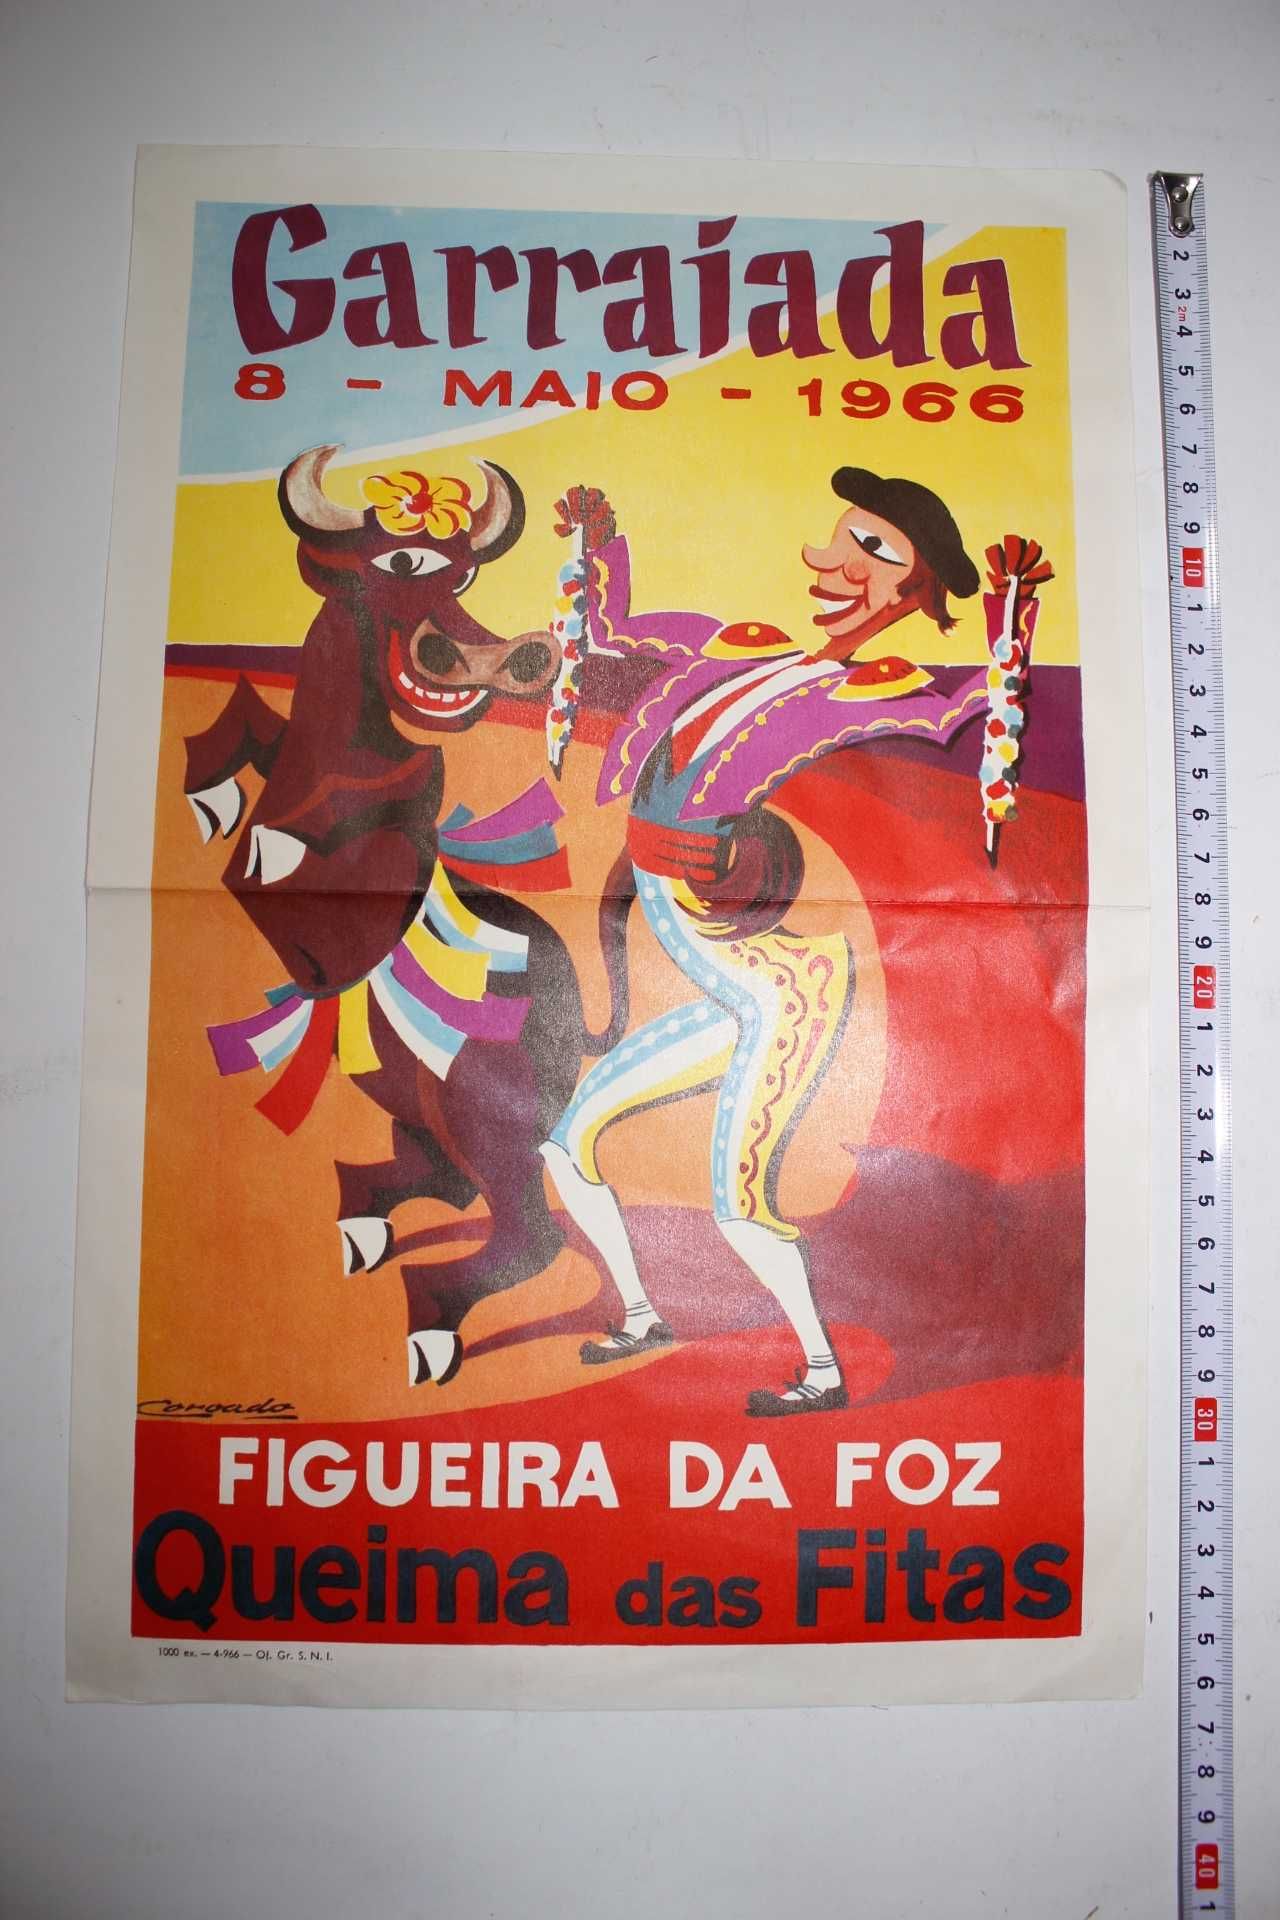 Cartaz original-Queima das Fitas 1966-Garraiada Figueira Foz-Tourada